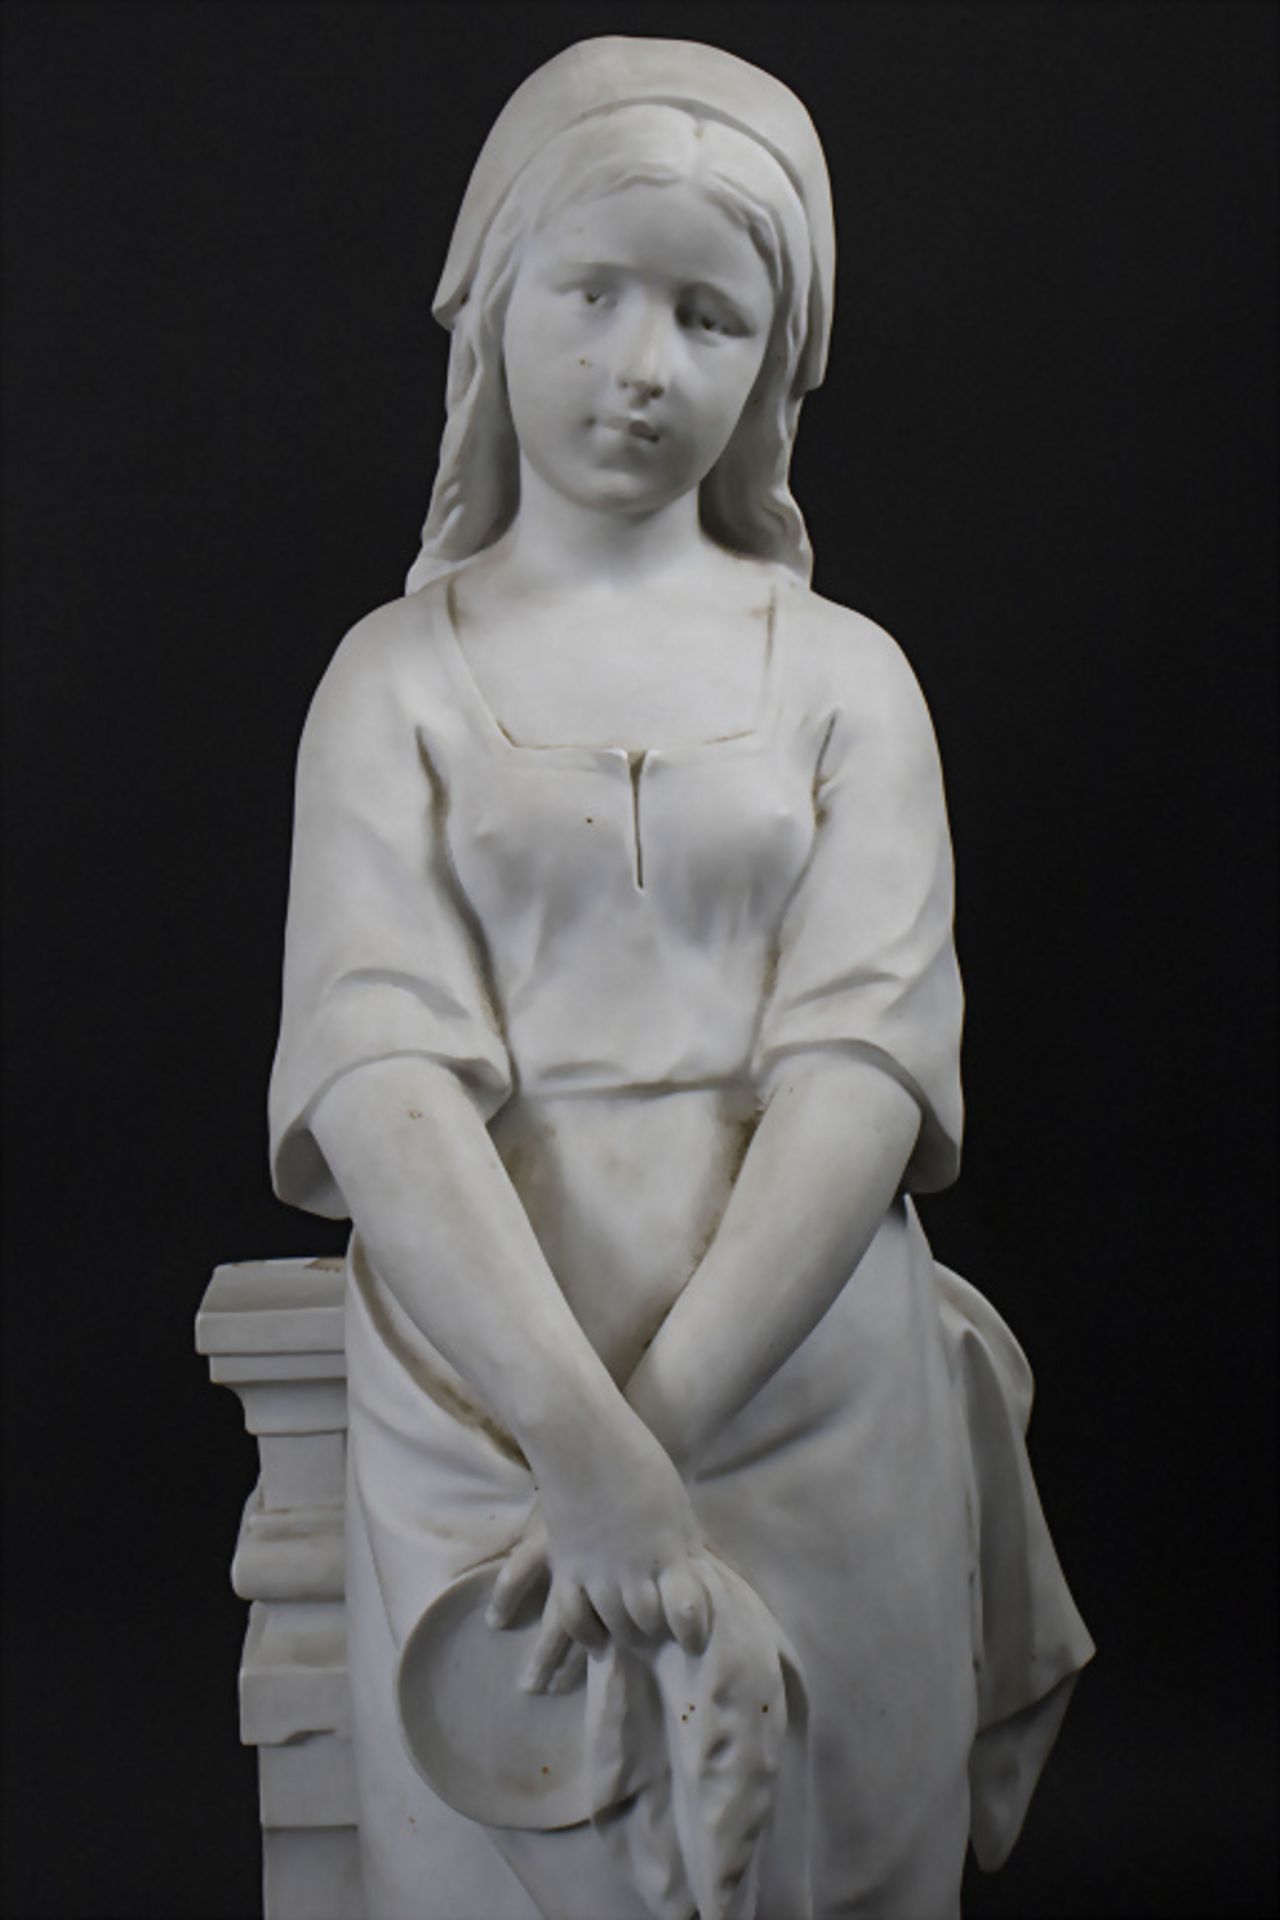 Nicolas Lecorney (aktiv 1880-84), große Bisquitporzellan Skulptur 'Junges Mädchen' / A large ... - Bild 2 aus 8